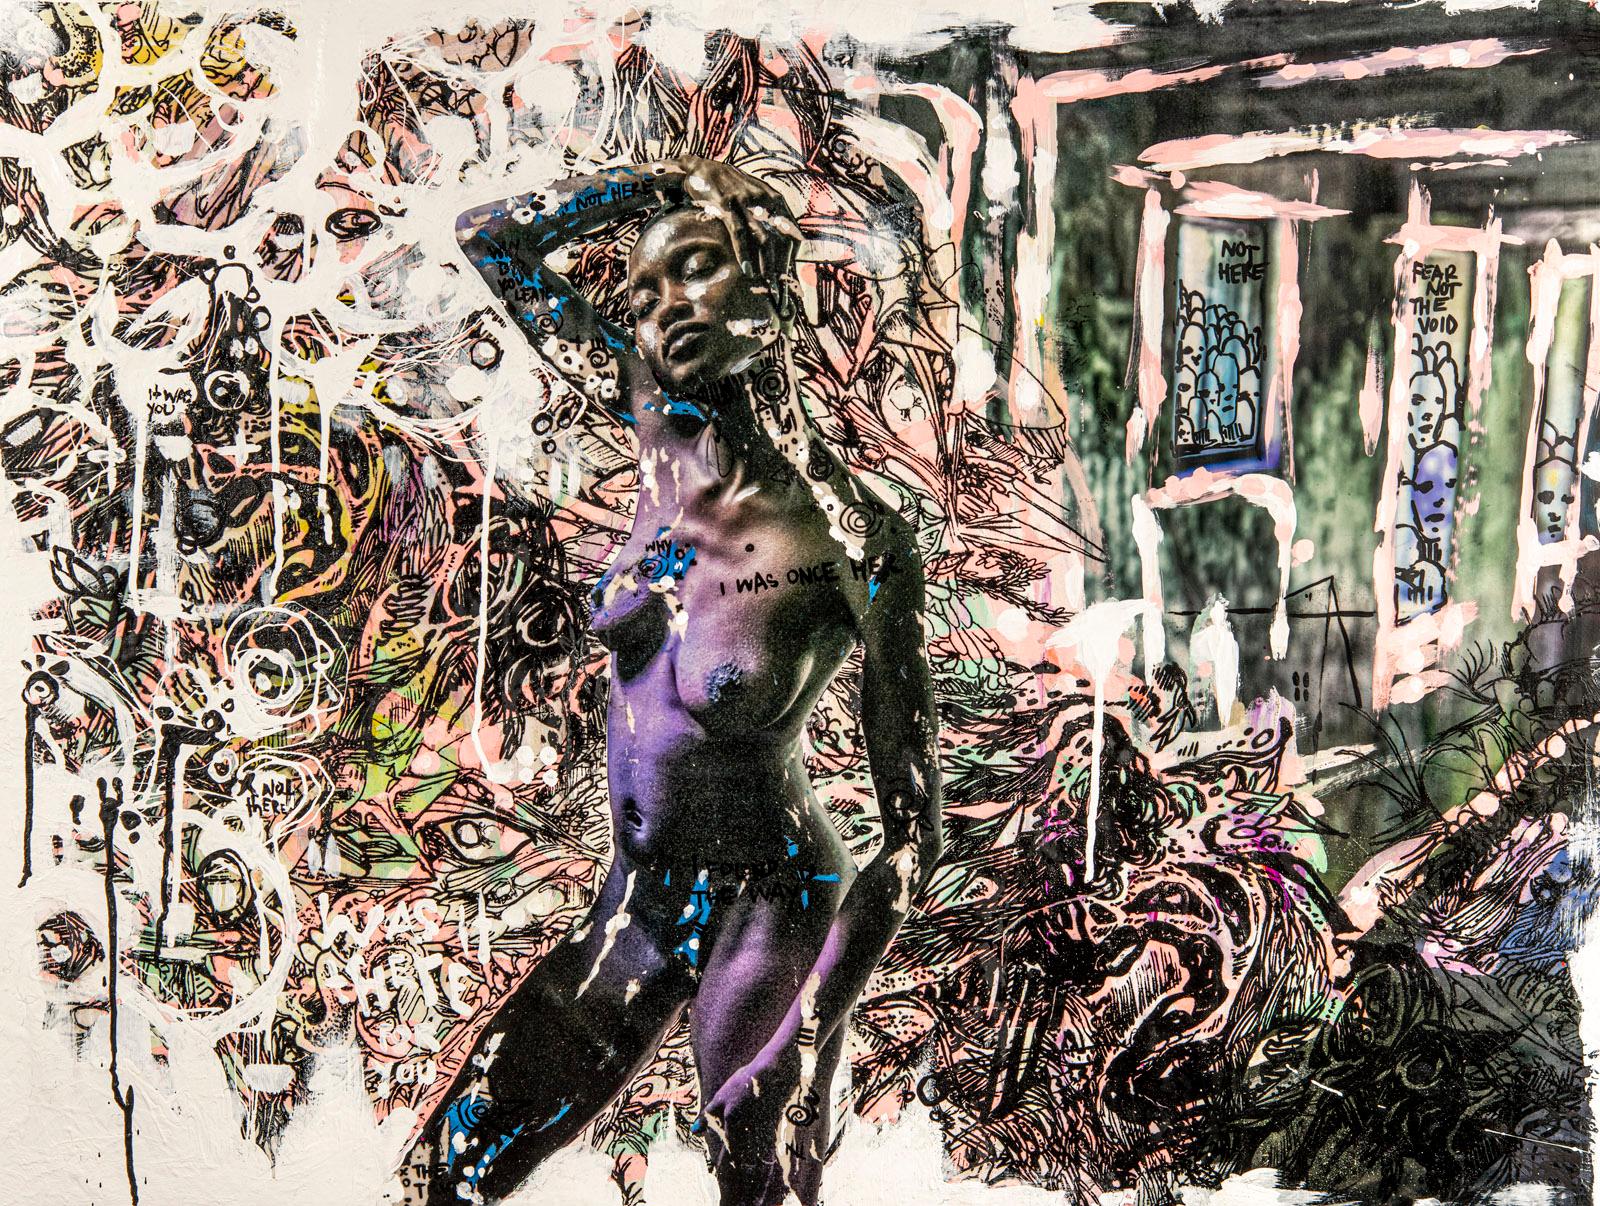 Serenity of Chaos - Mixed Media Art by John Herbert Wright